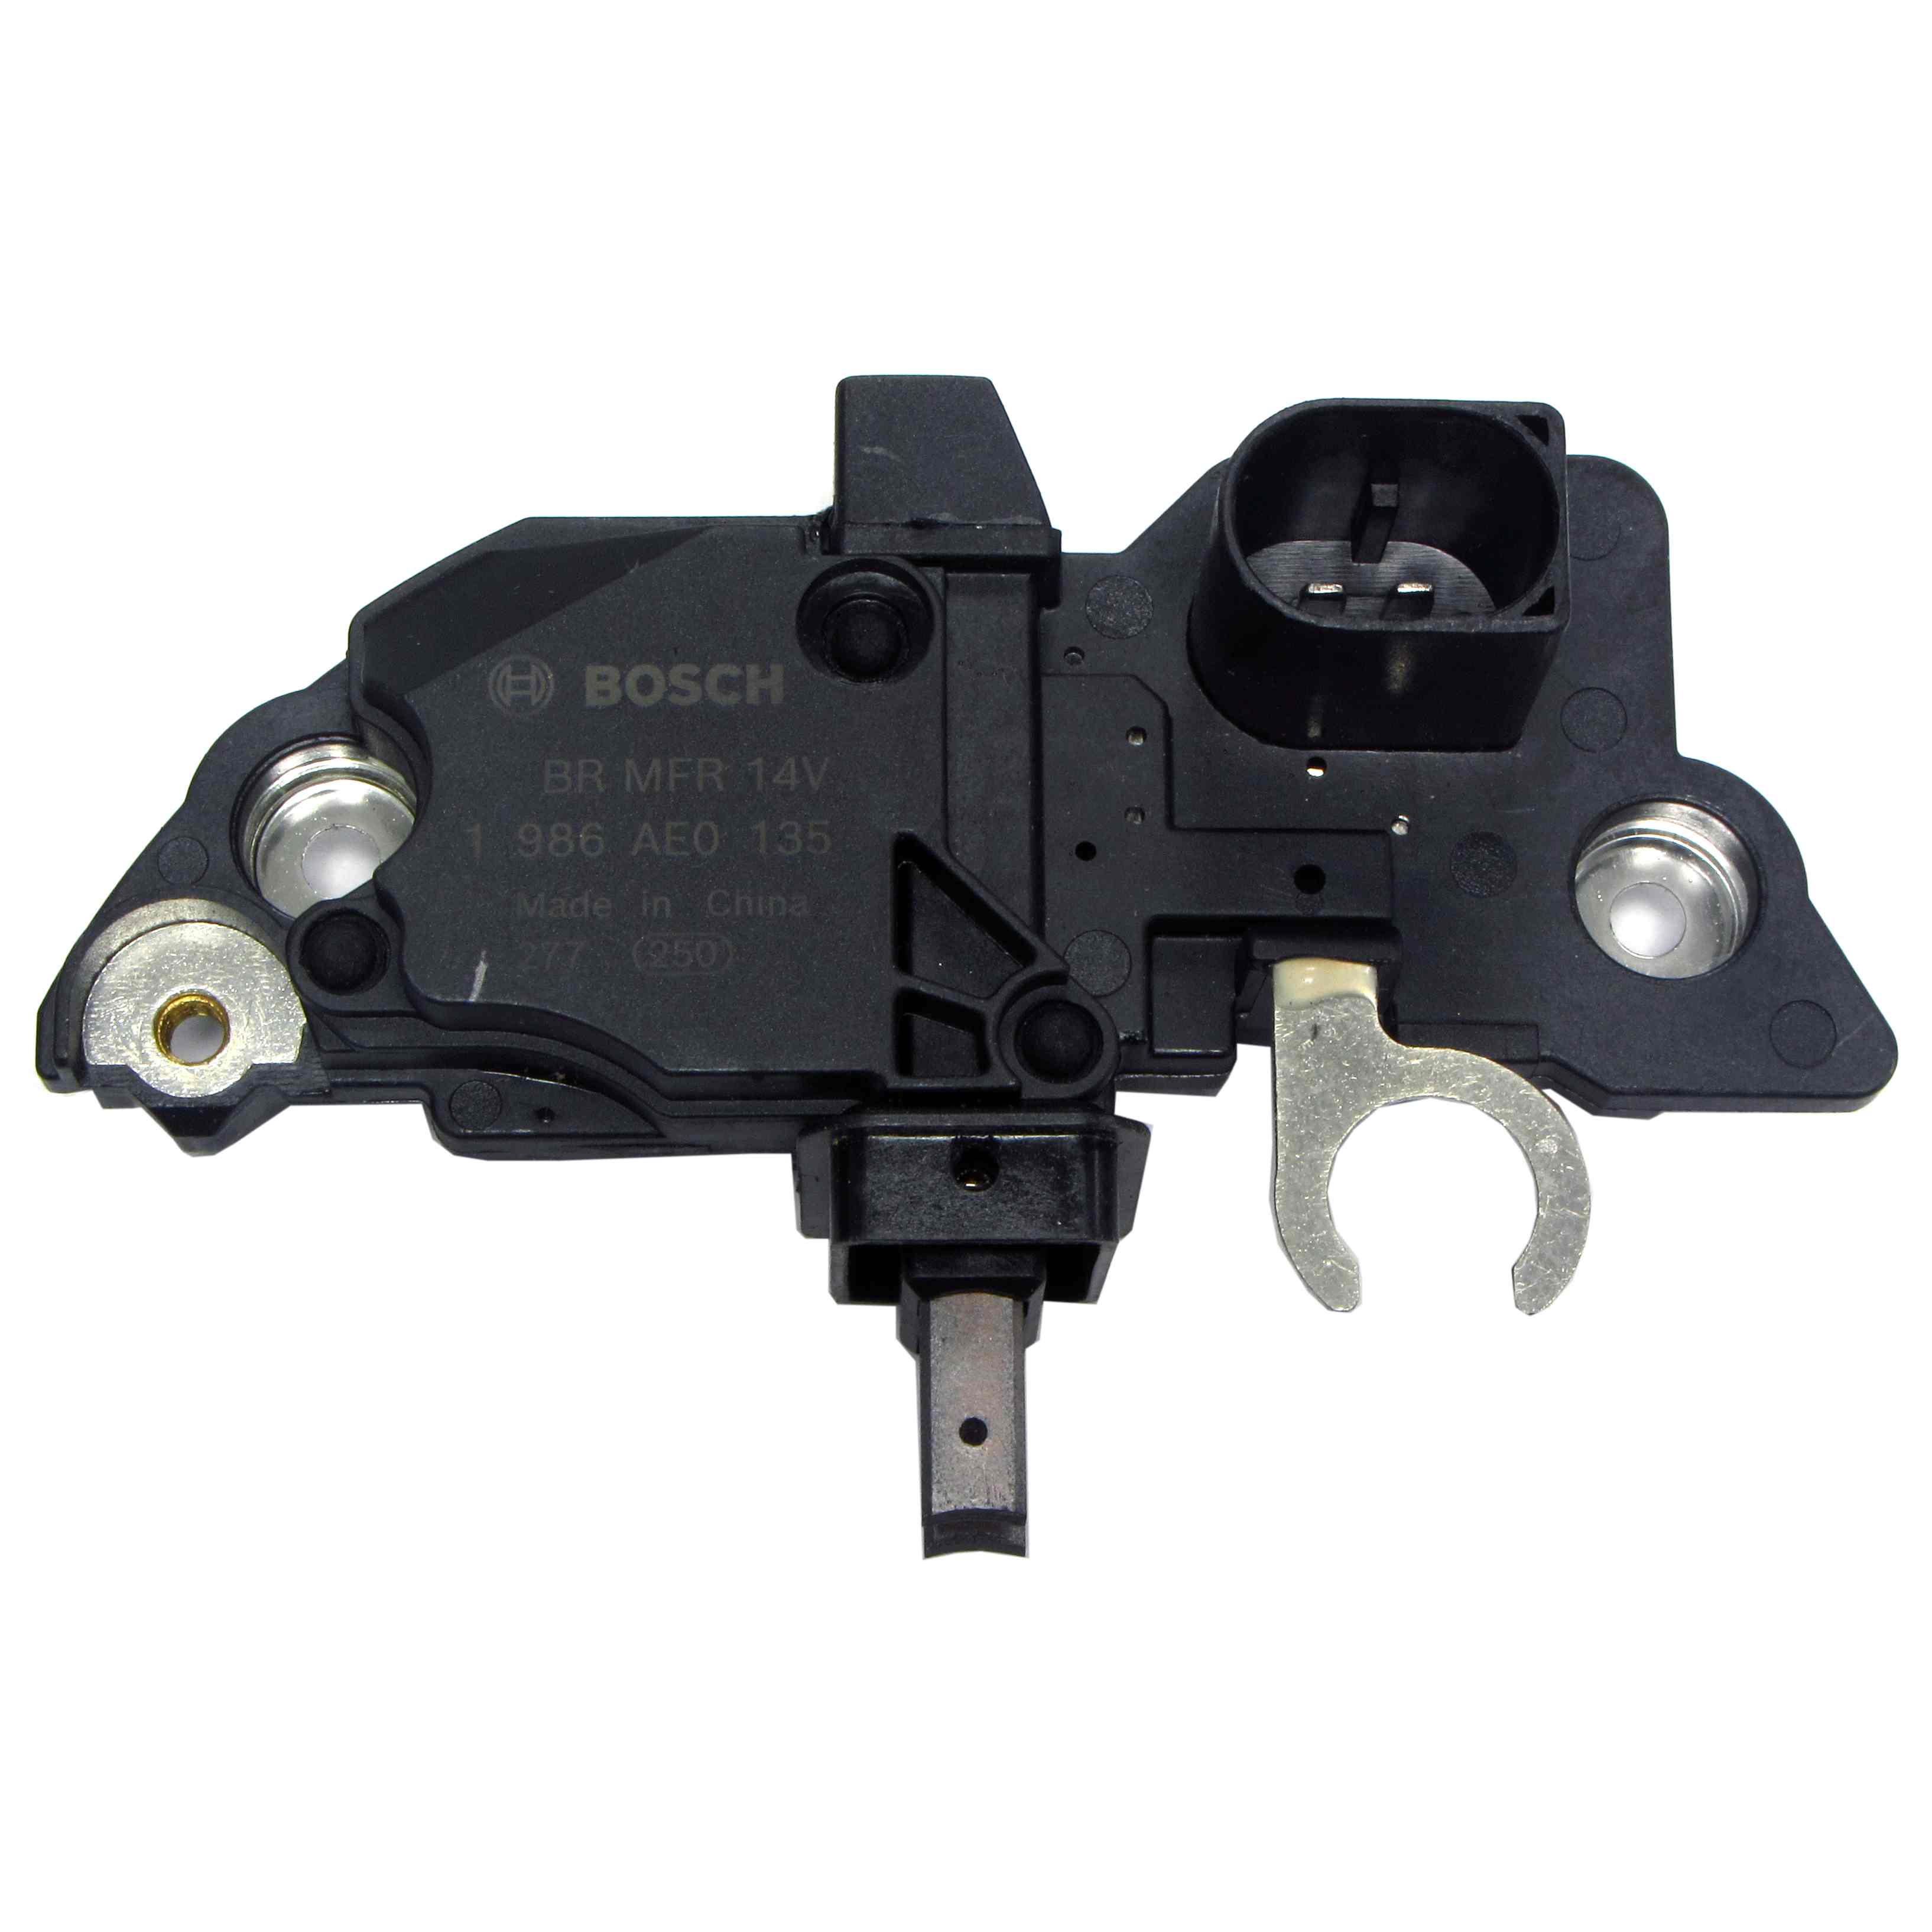 Bosch 1986AE0135